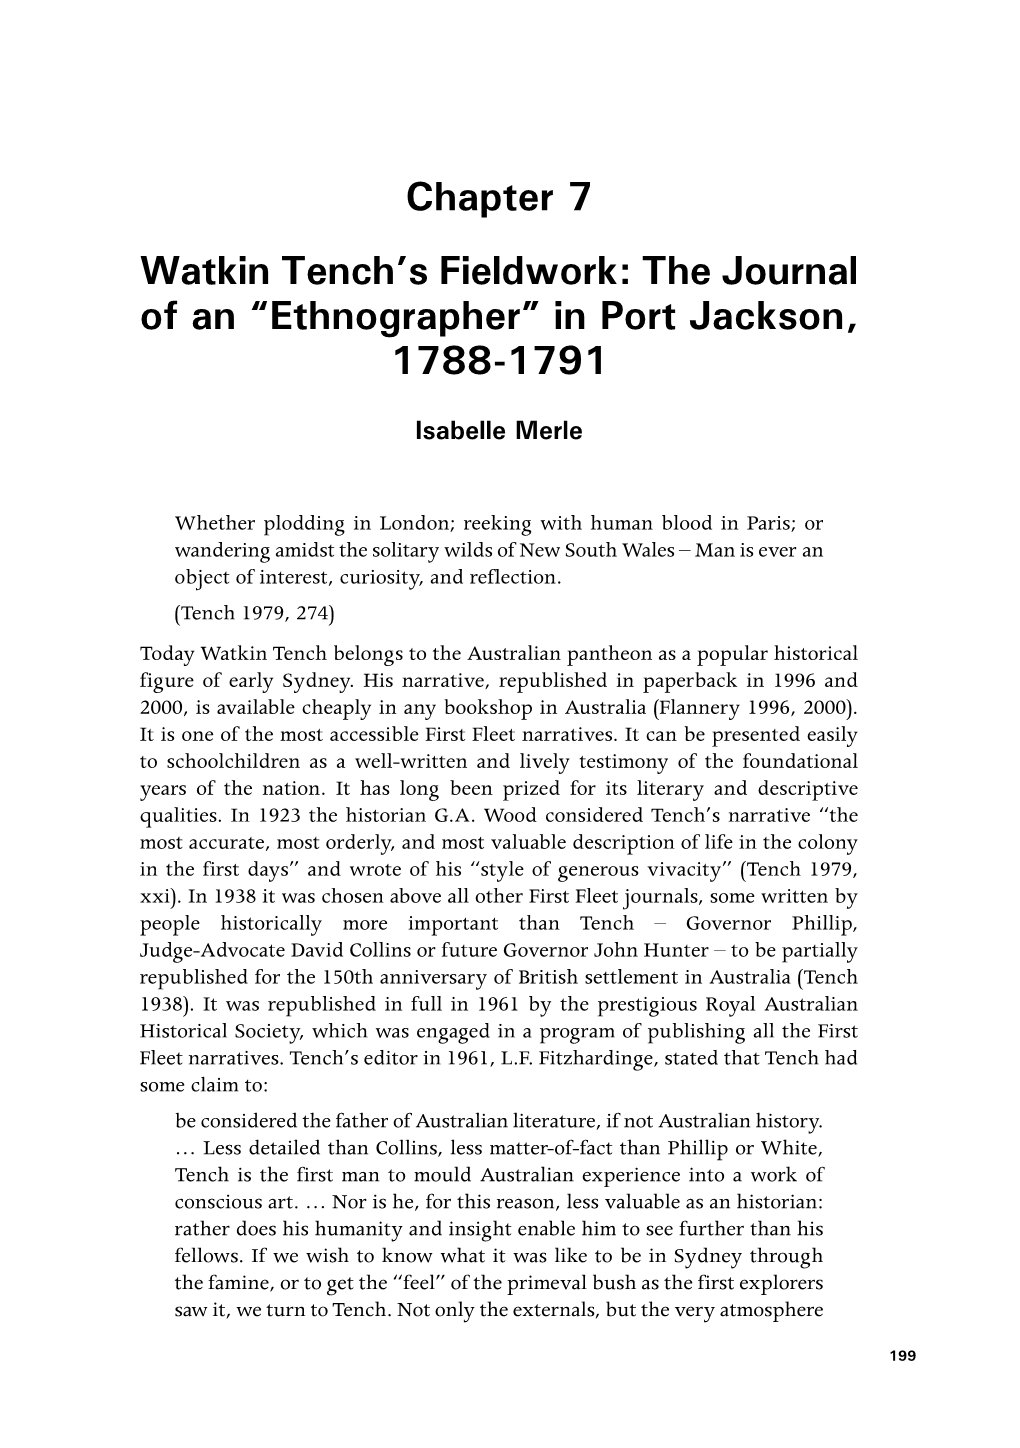 Watkin Tench's Fieldwork